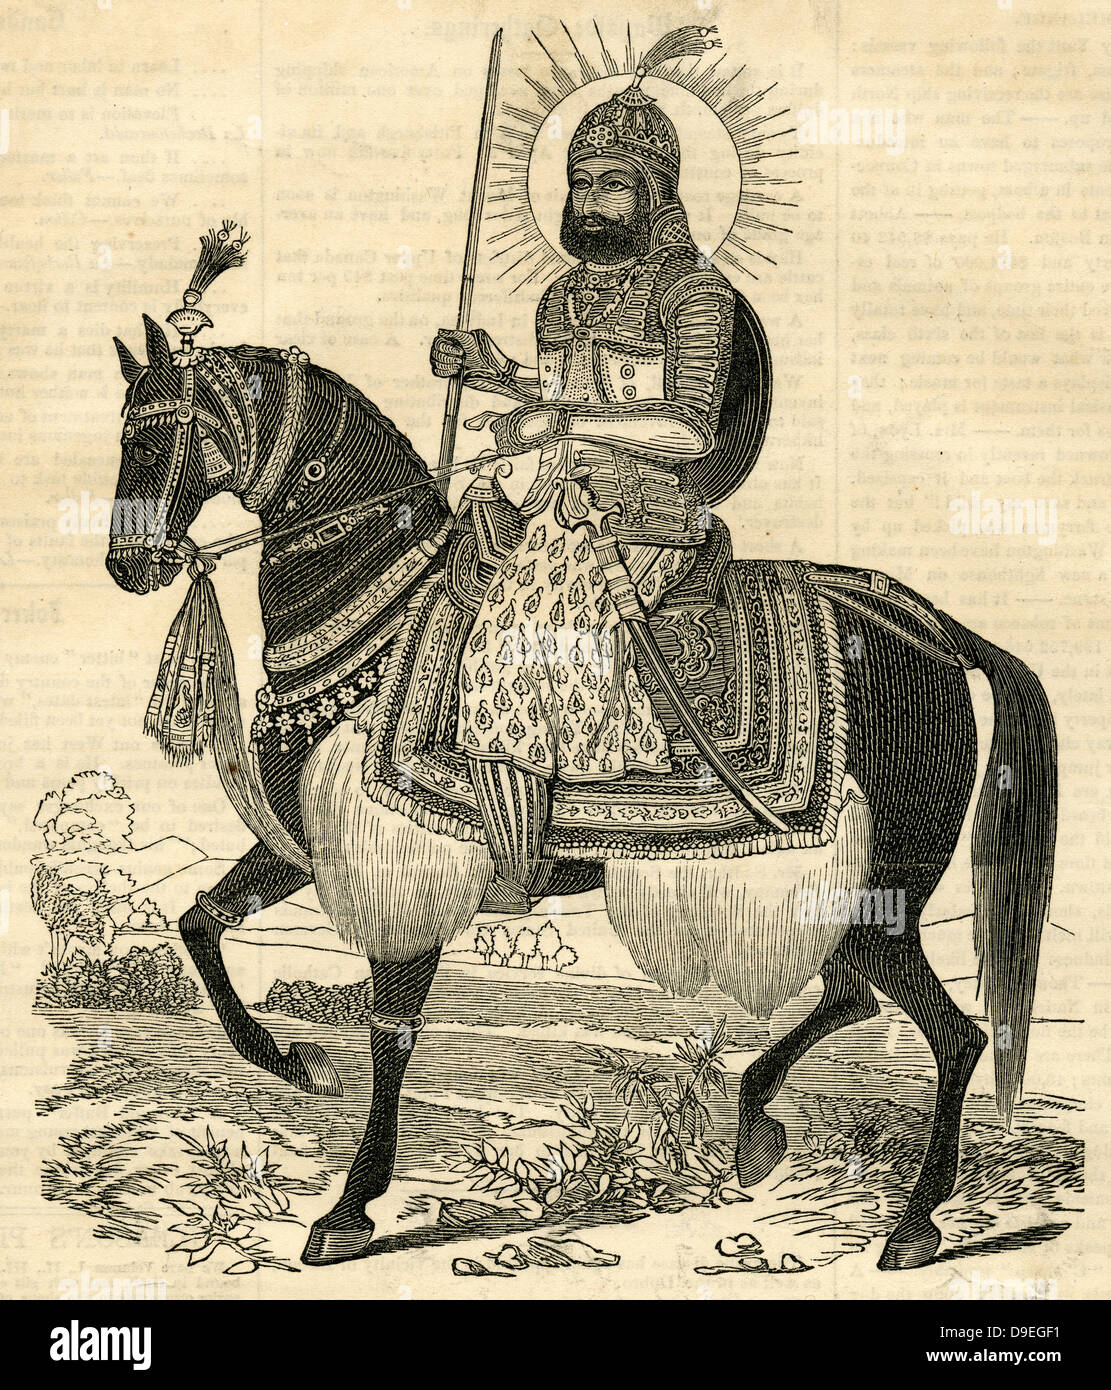 1854-Gravur, The Maharaja Karam Singh von Patiala, regierte von 1813 bis 1845. Stockfoto